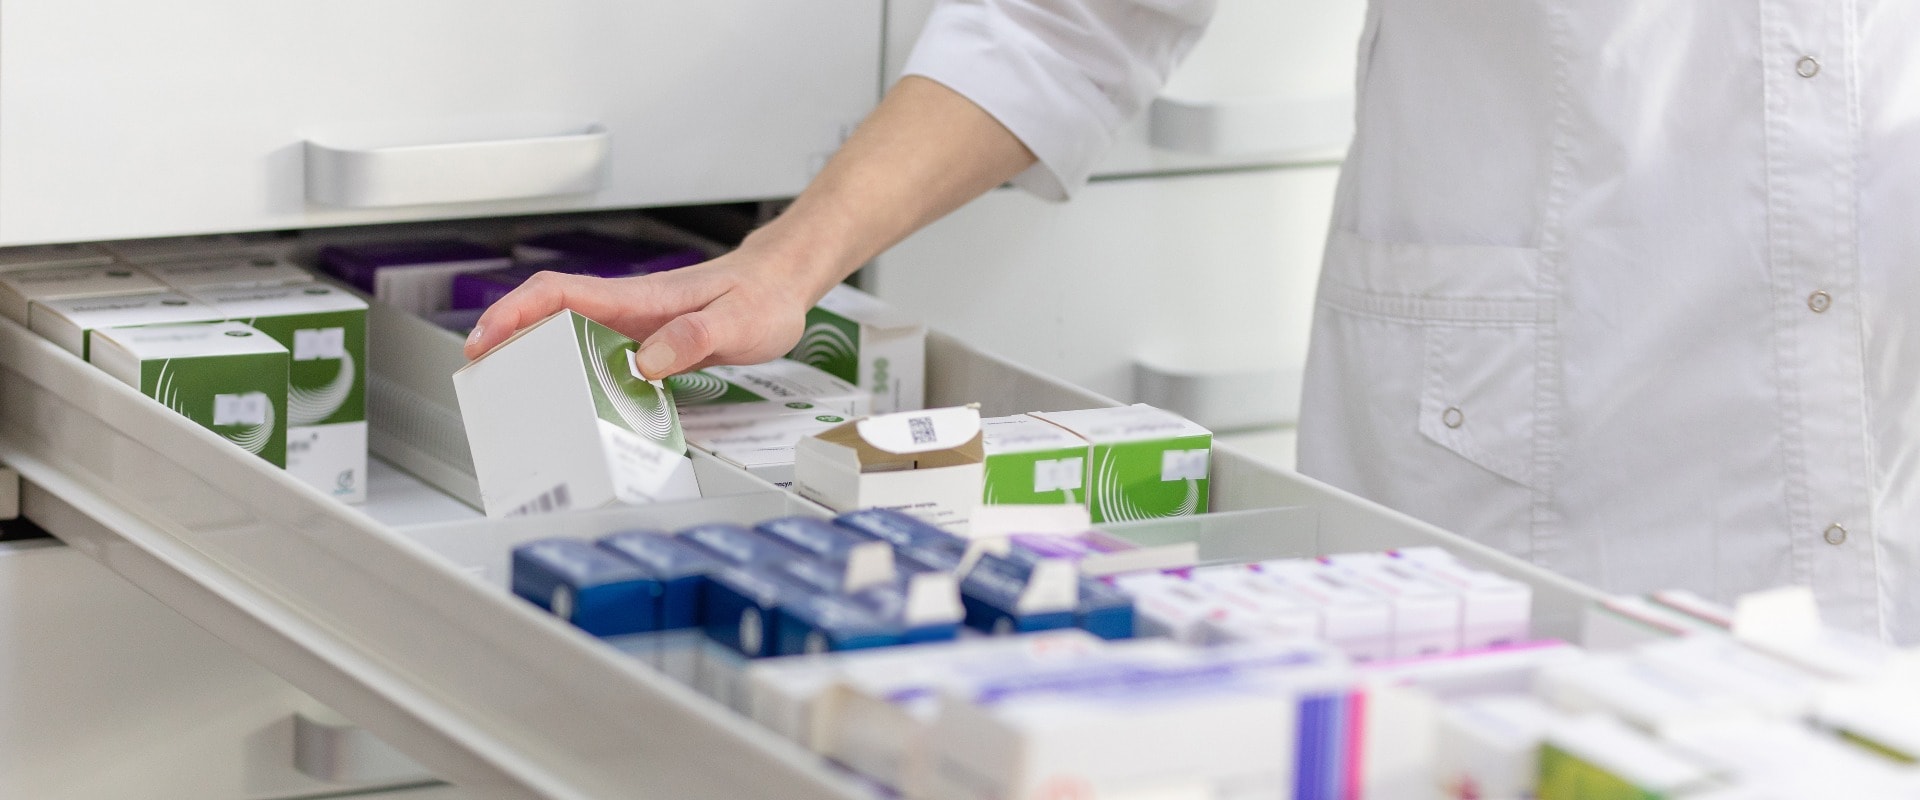 Apotheker nimmt Medikamente aus einer Schublade